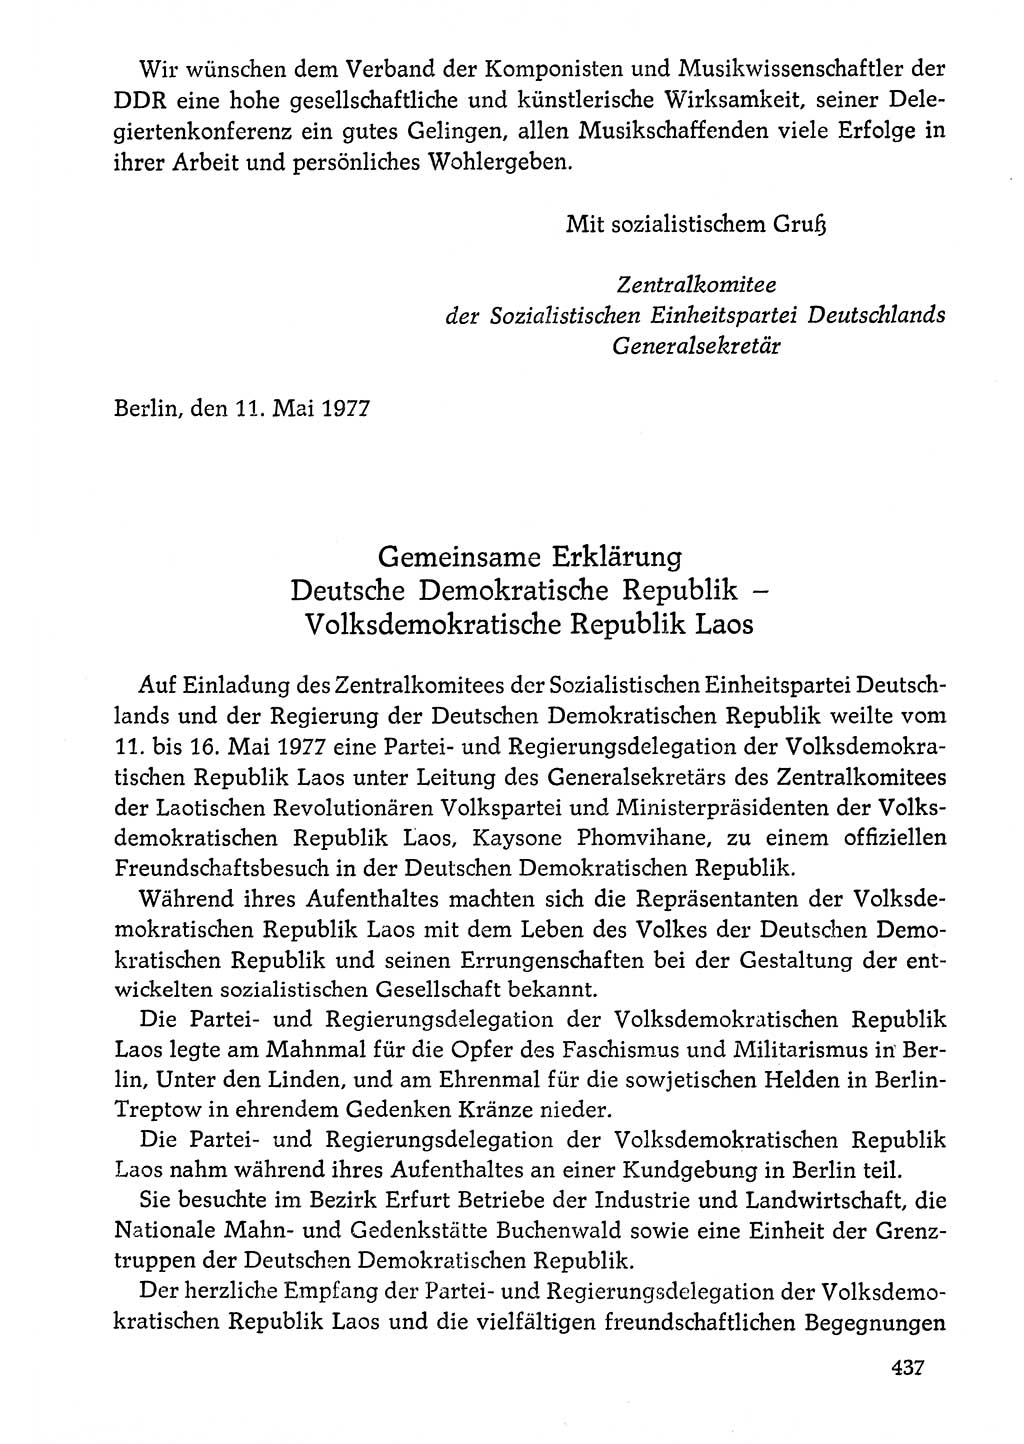 Dokumente der Sozialistischen Einheitspartei Deutschlands (SED) [Deutsche Demokratische Republik (DDR)] 1976-1977, Seite 437 (Dok. SED DDR 1976-1977, S. 437)